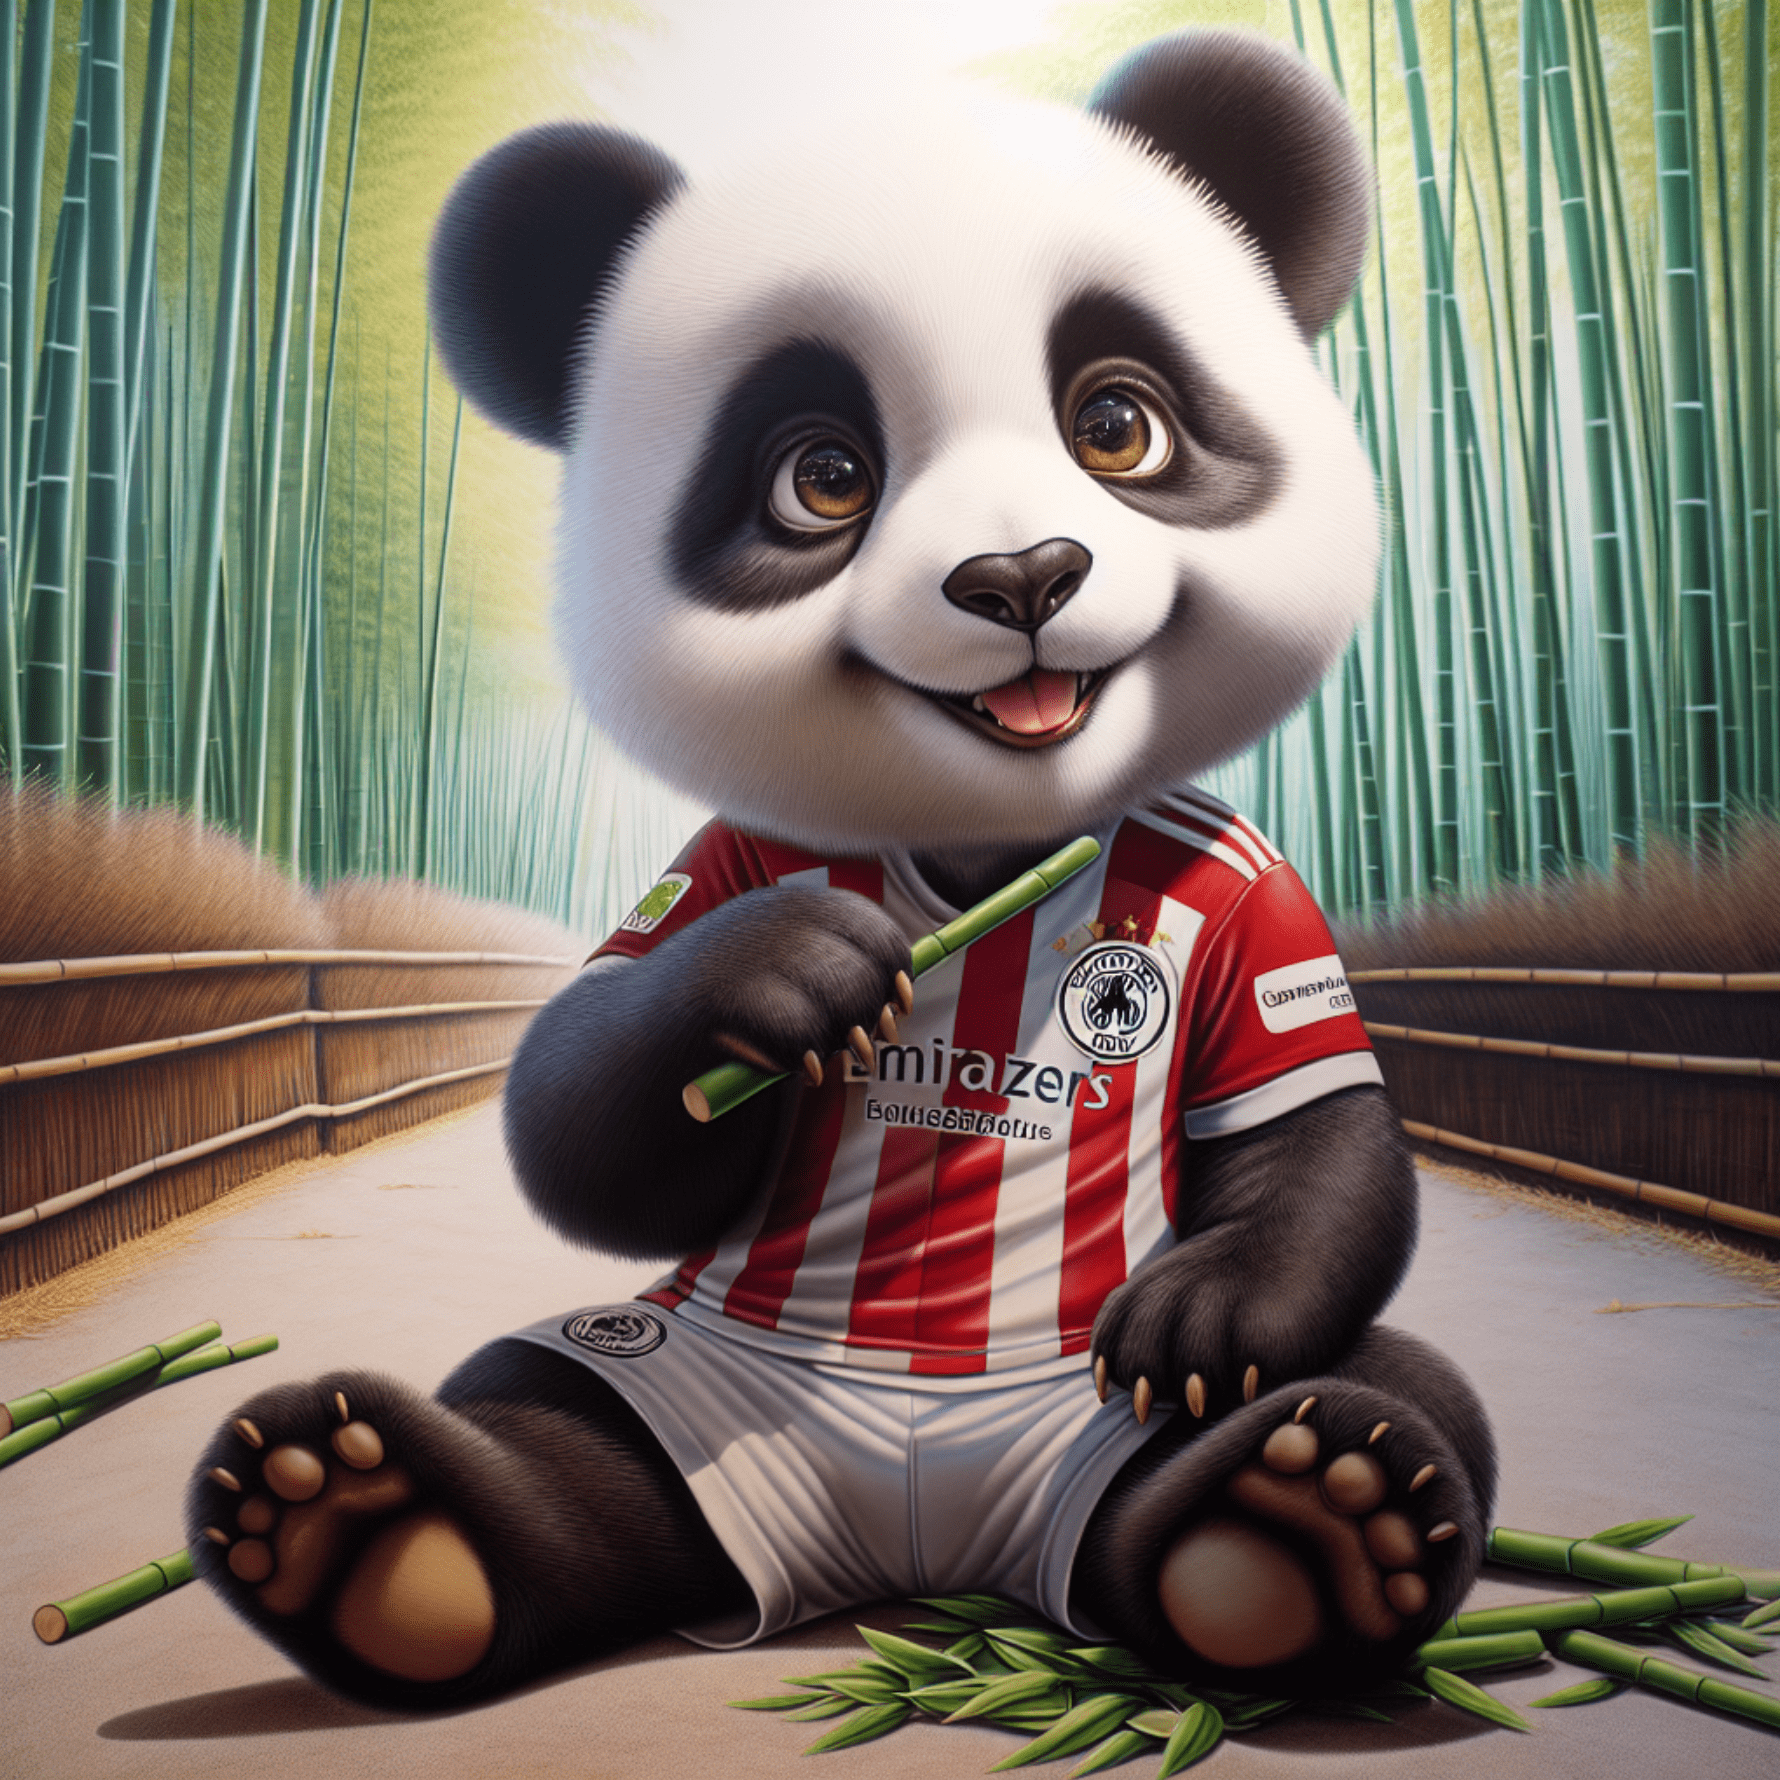 Cute panda with Bayern munchkin jersey realistic.